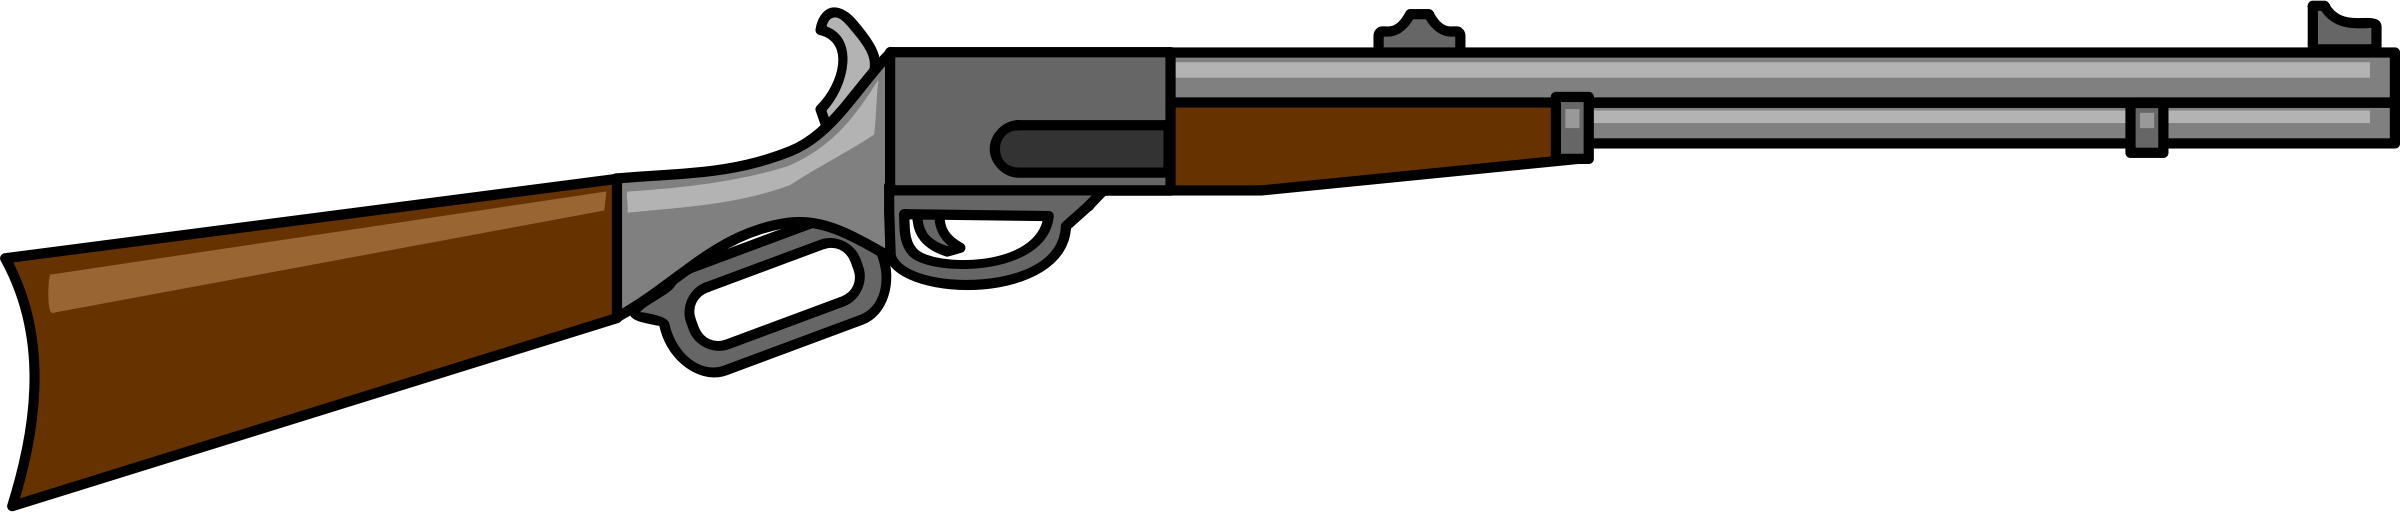 Gun 11 - Rifle Clipart.